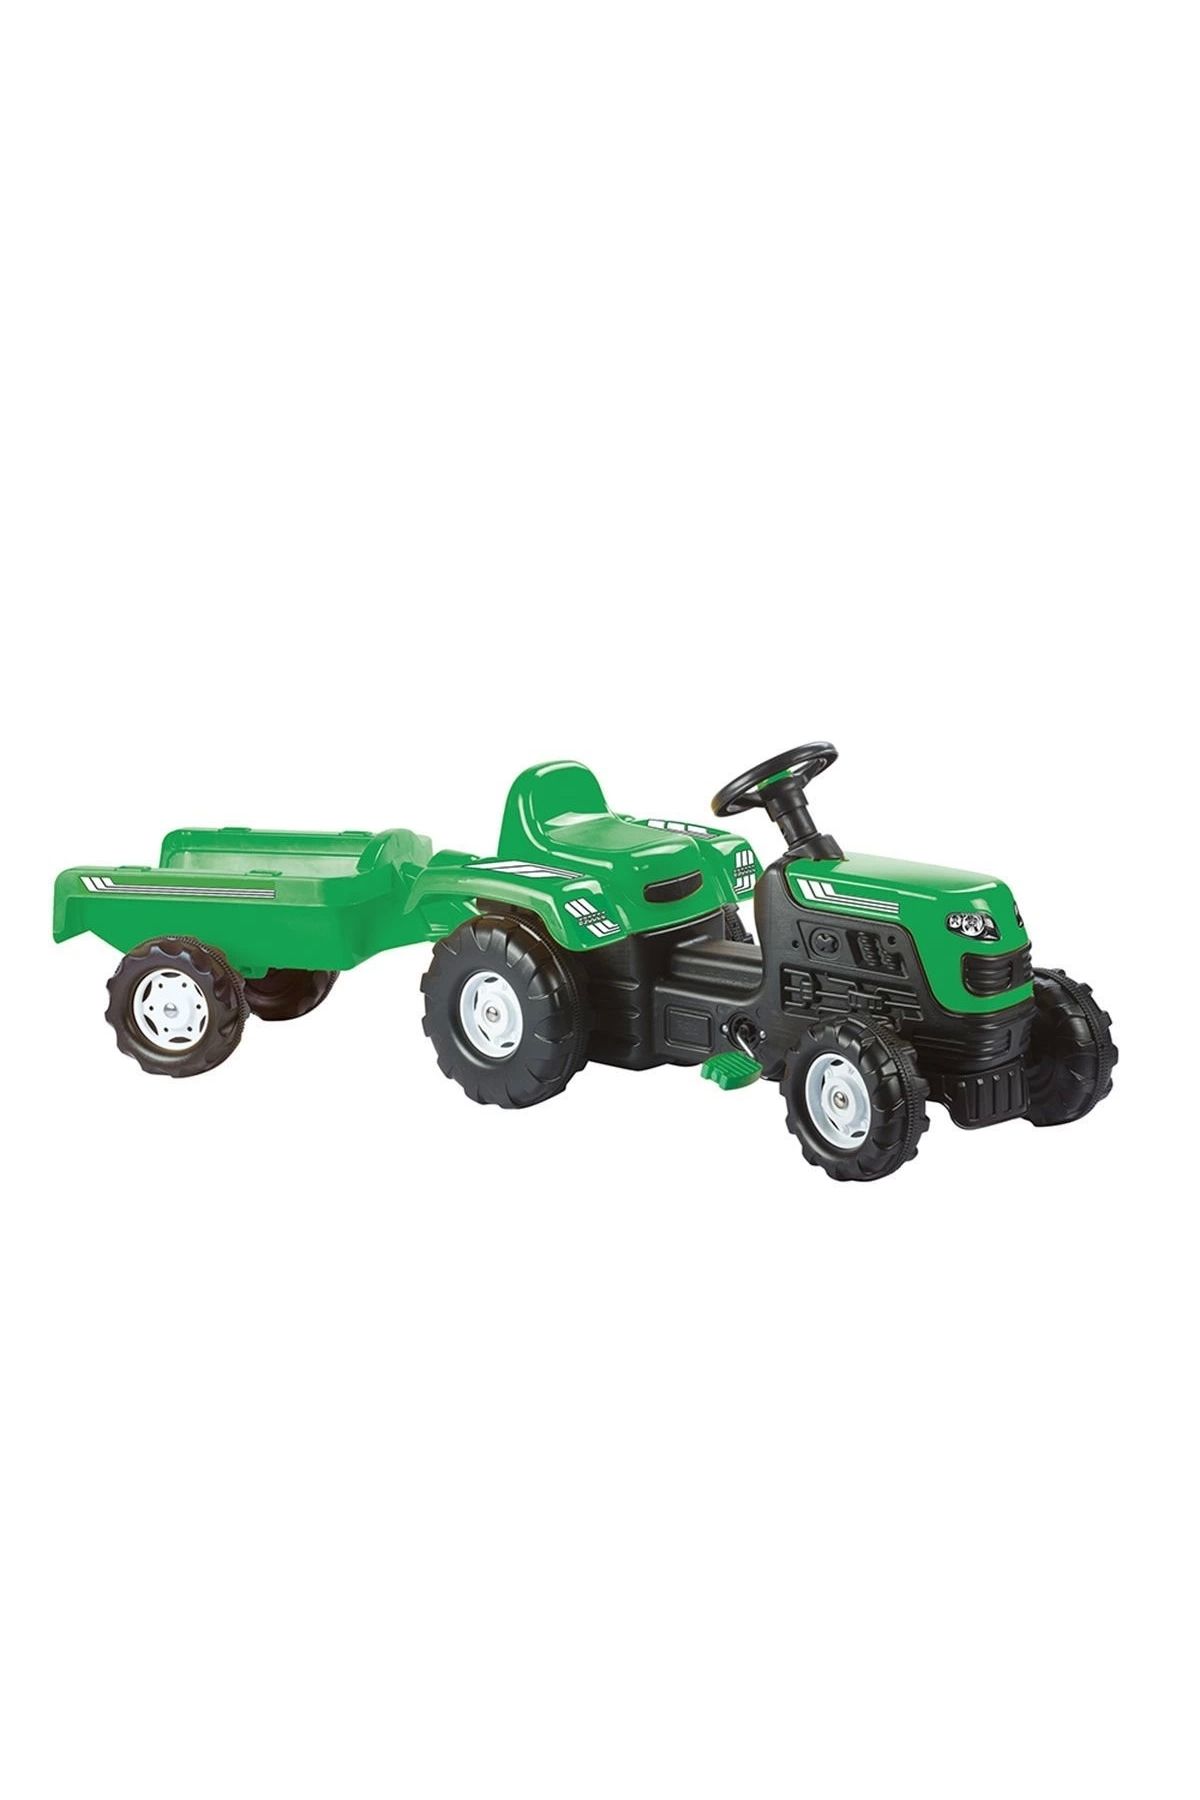 SAZE 8246 Römorklu Pedallı Traktör Yeşil -dolu